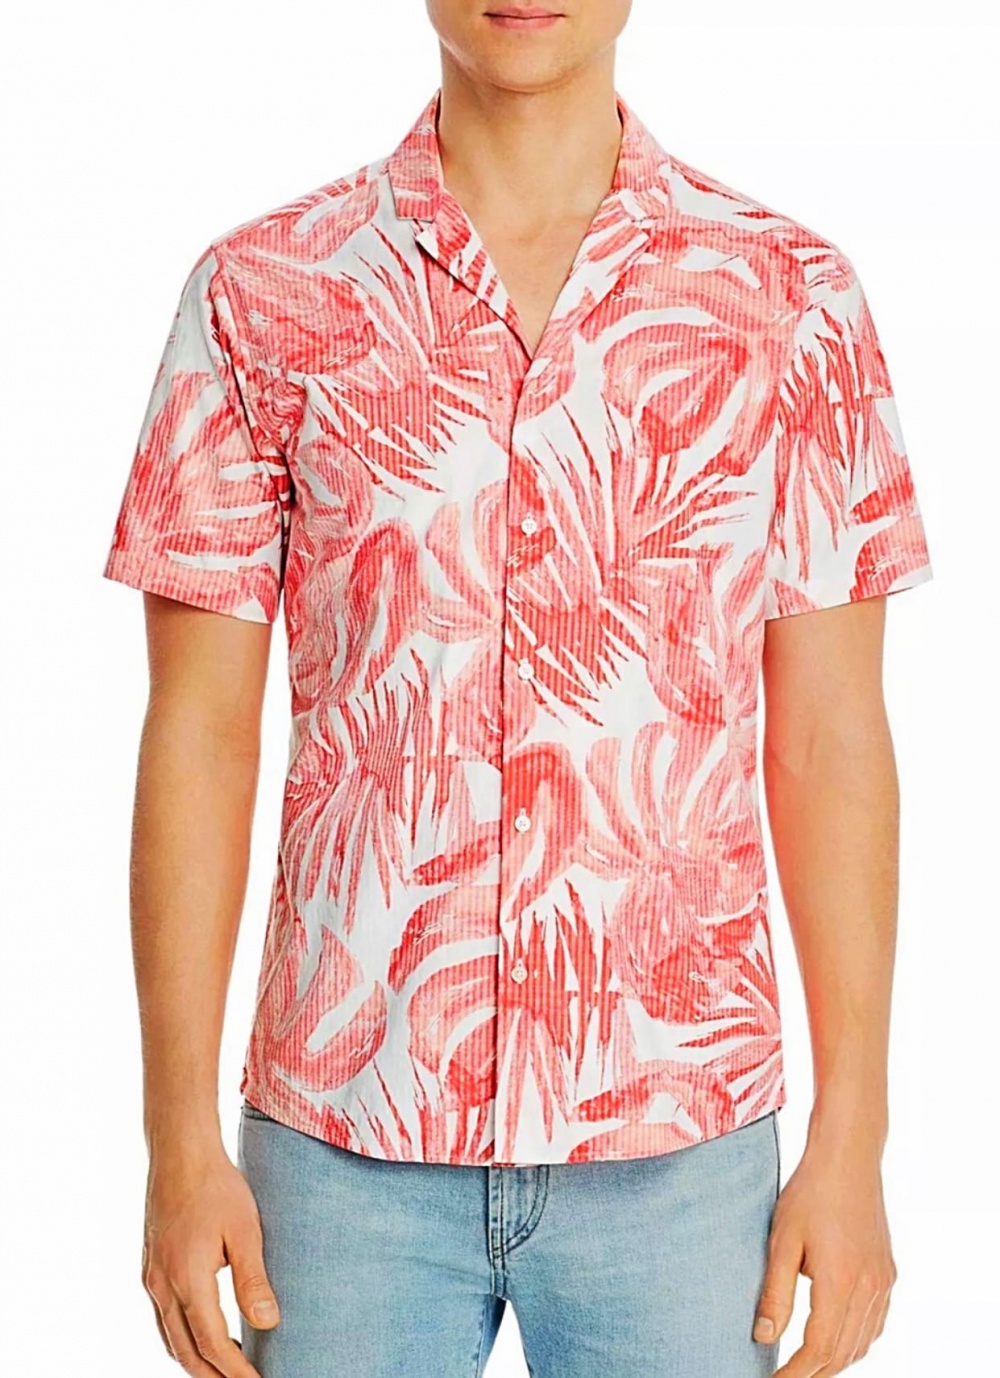 Мужская рубашка от Michael Kors XL